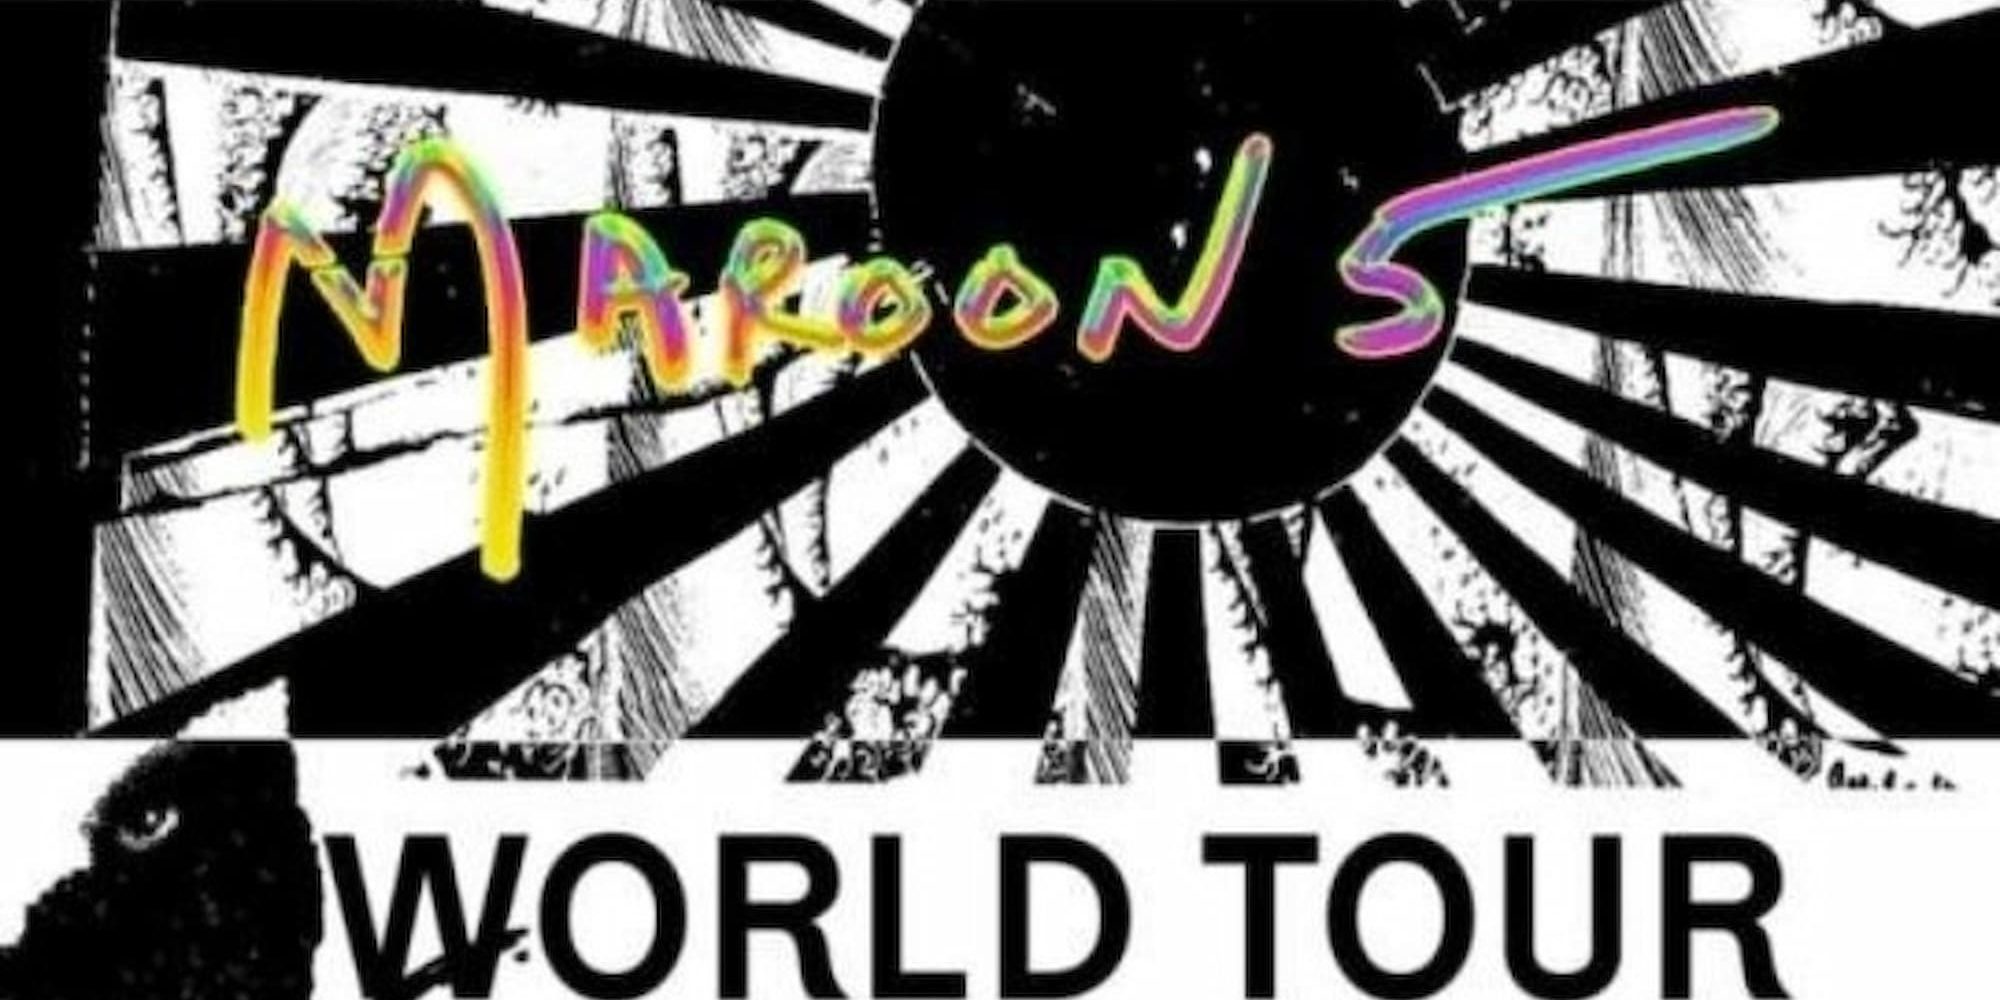 Αφίσα των Maroon 5 προκάλεσε αντιδράσεις στη Νότια Κορέα